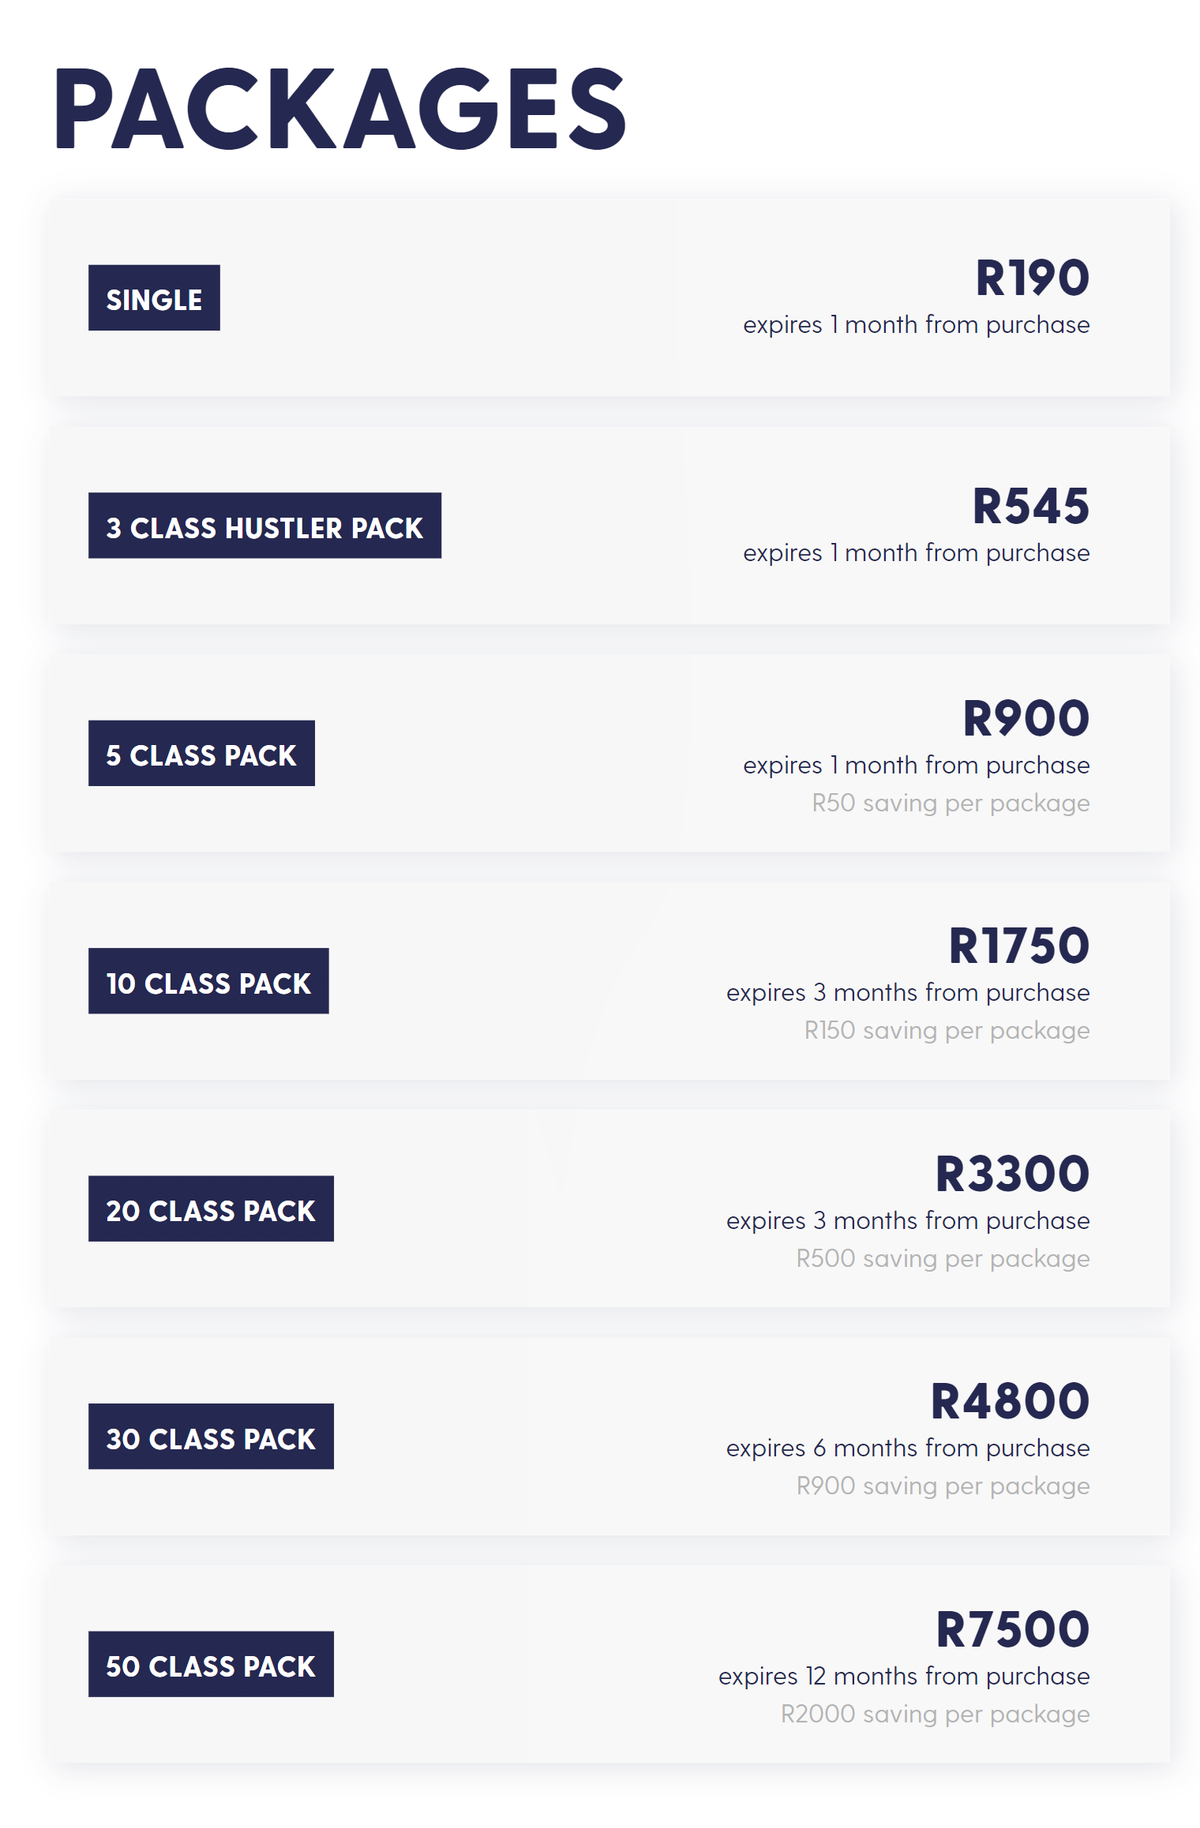 Цены на сайклинг в кейптаунской студии Hustle & Heart указаны в южноафриканских рэндах. В переводе на рубли получается почти так&nbsp;же, как в московской сети Velobeat. Источник: hustleandheartcyclingstudio.co.za